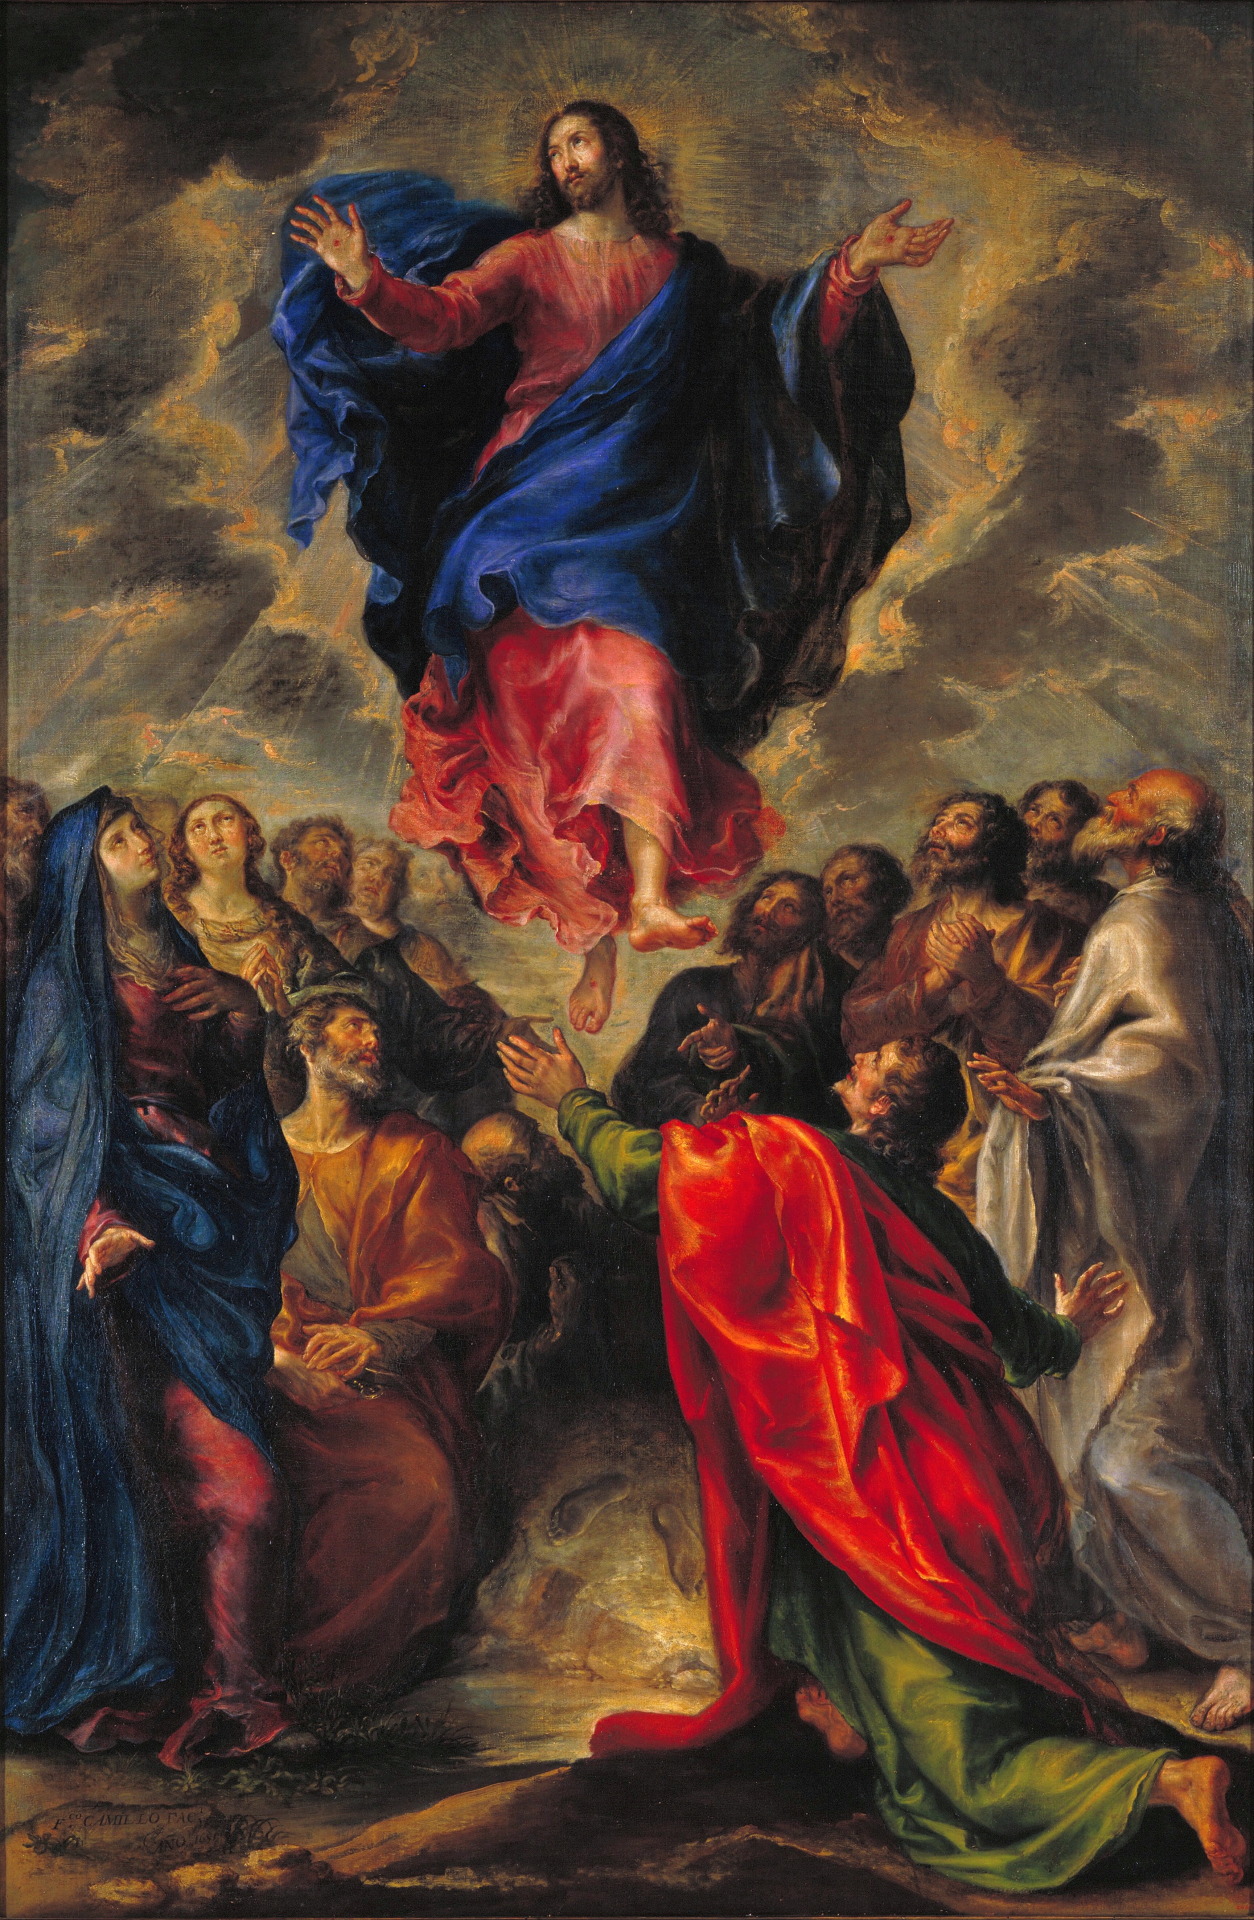 Francisco Camilo, The Ascension, 1651